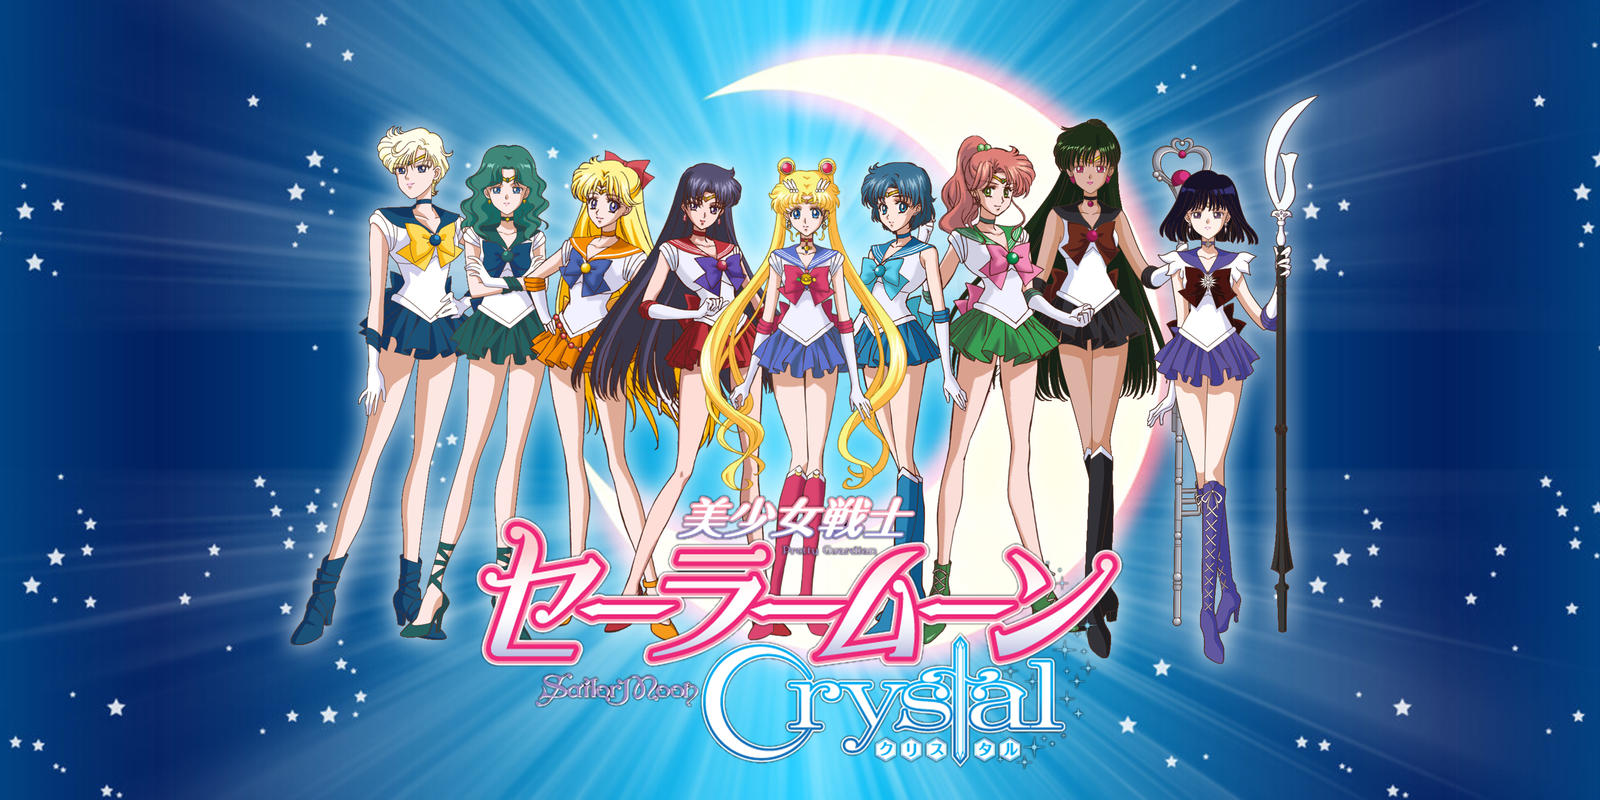 Sailor Mercury - Sailor Moon Crystal Season 3 by xuweisen on DeviantArt